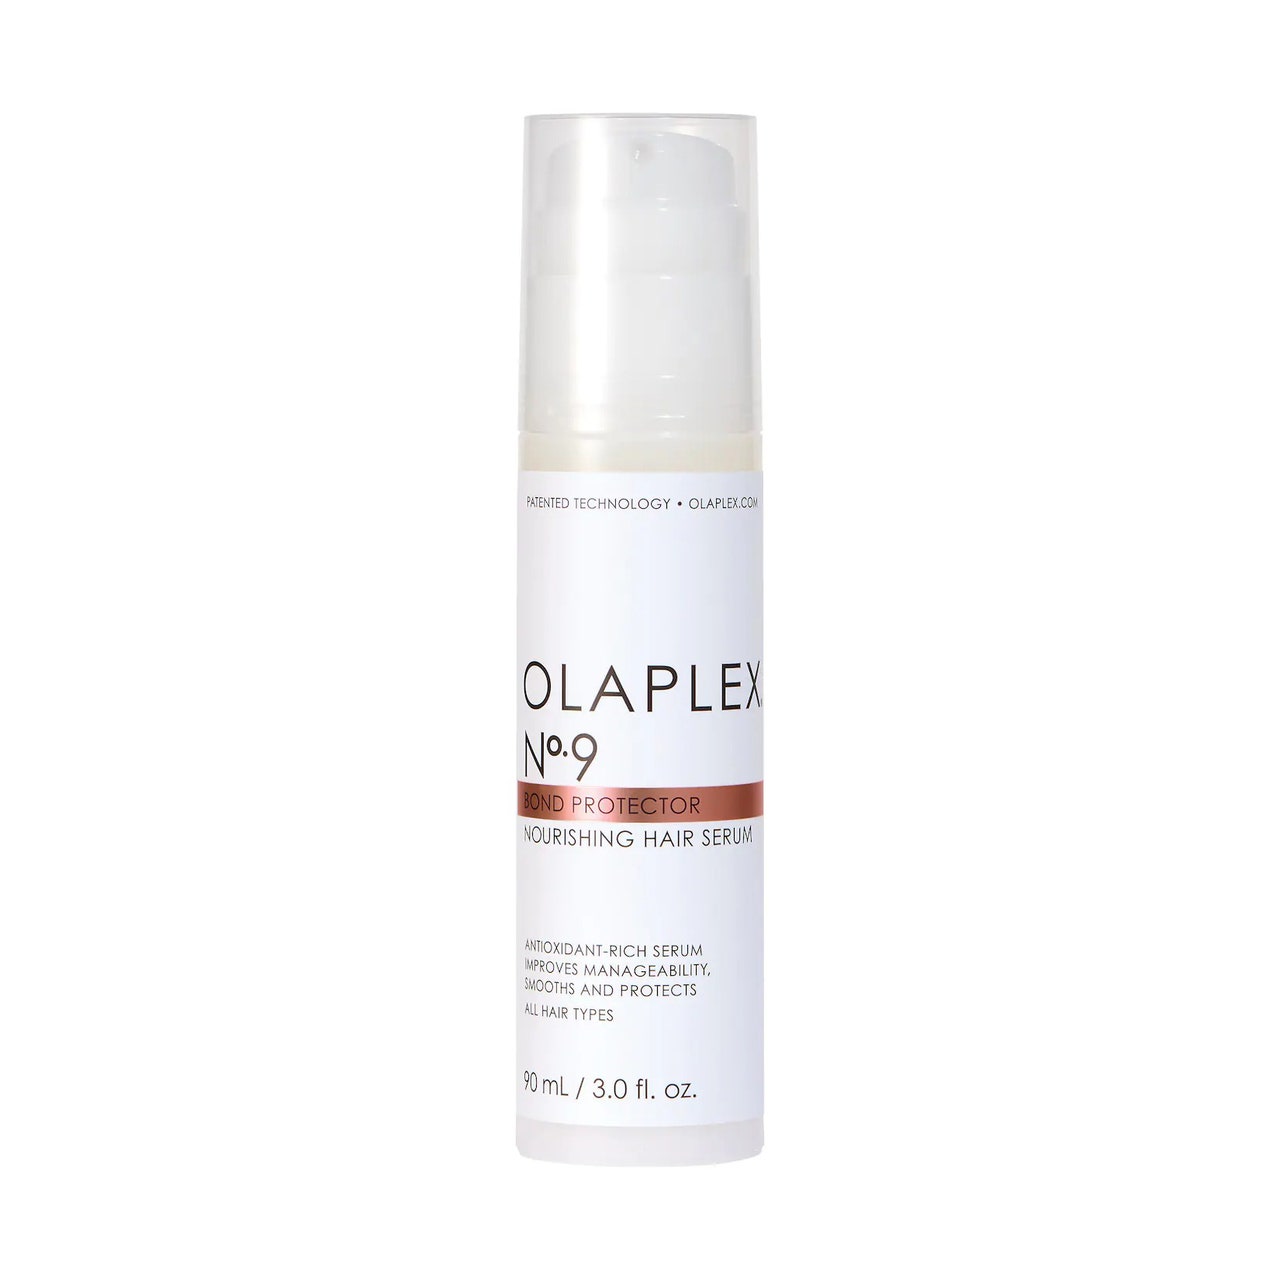 Olaplex Nr. 9 Bond Protector Nourishing Hair Serum weiße Flasche auf weißem Hintergrund